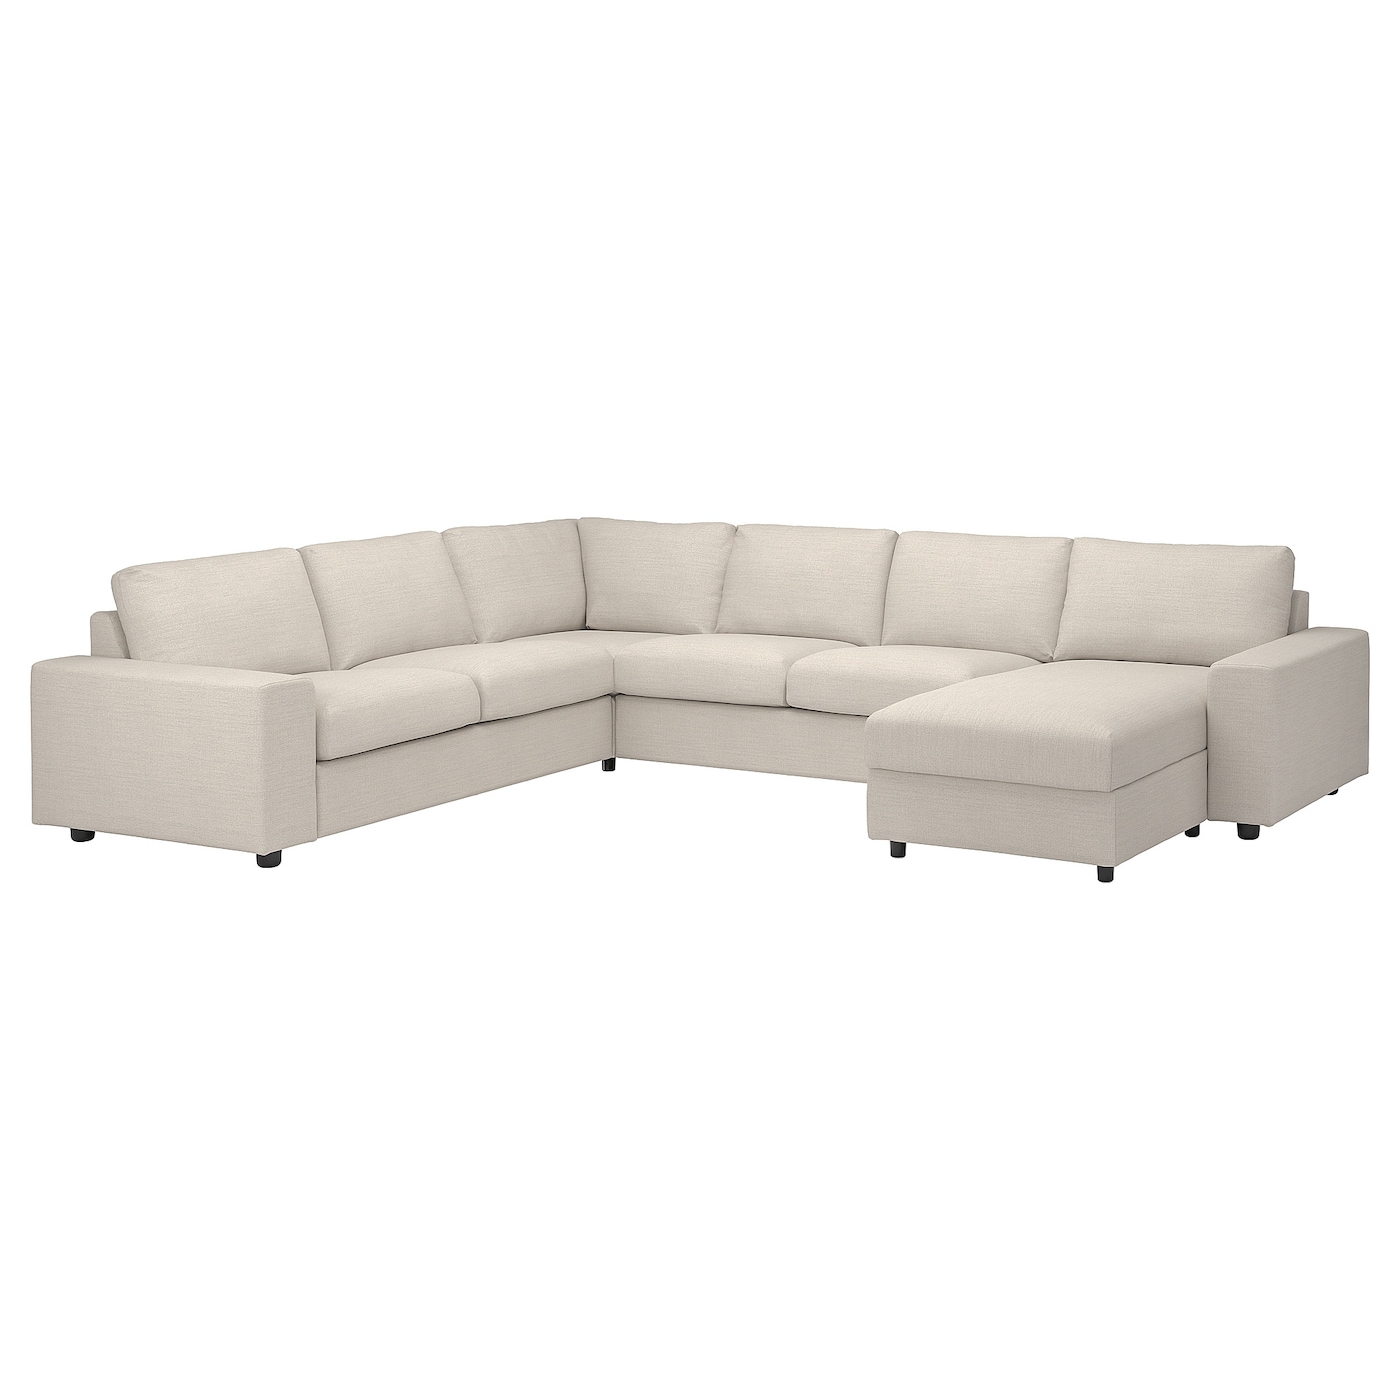 ВИМЛЕ Диван угловой, 5-местный. диван+диван, с широкими подлокотниками/Гуннаред бежевый VIMLE IKEA цена и фото